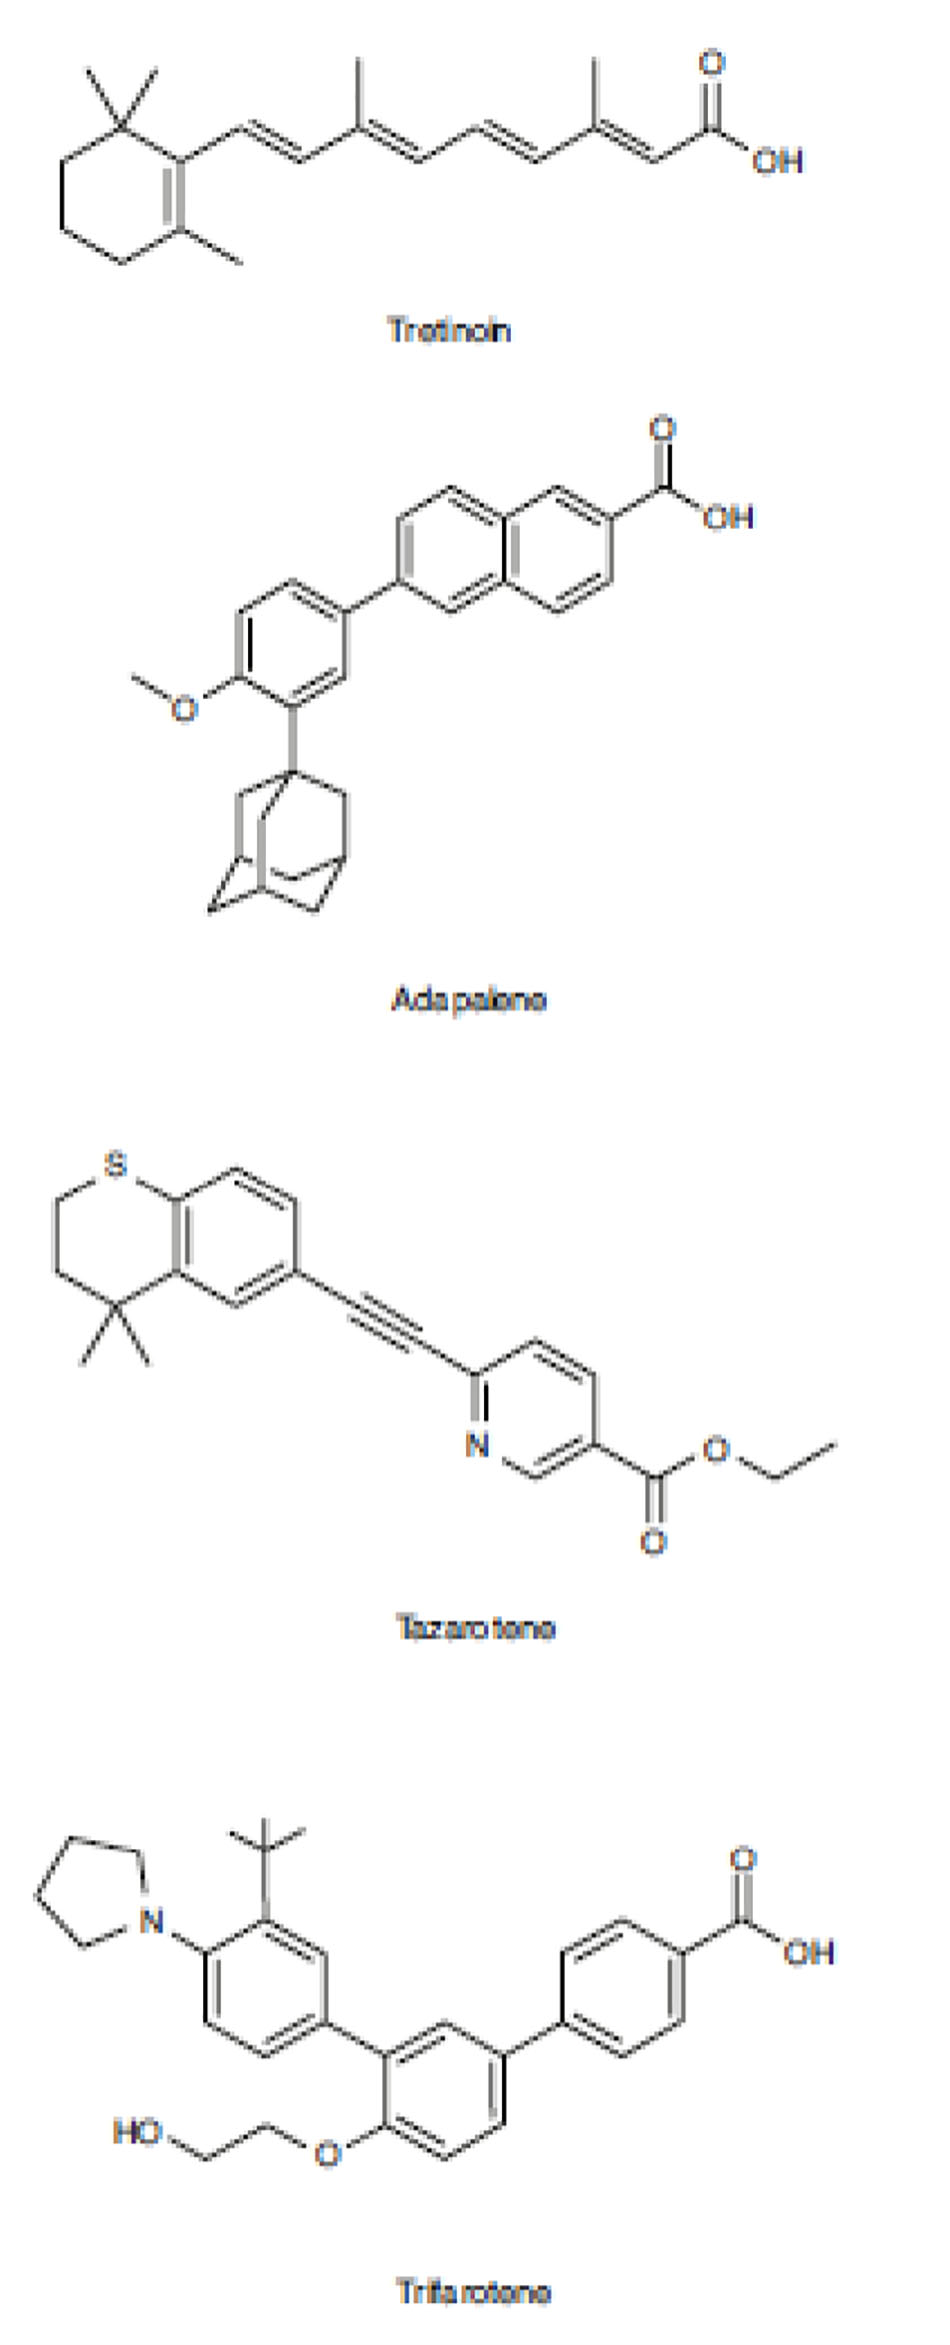 Hình 5.1 cấu trúc hóa học của các Retinoids bôi